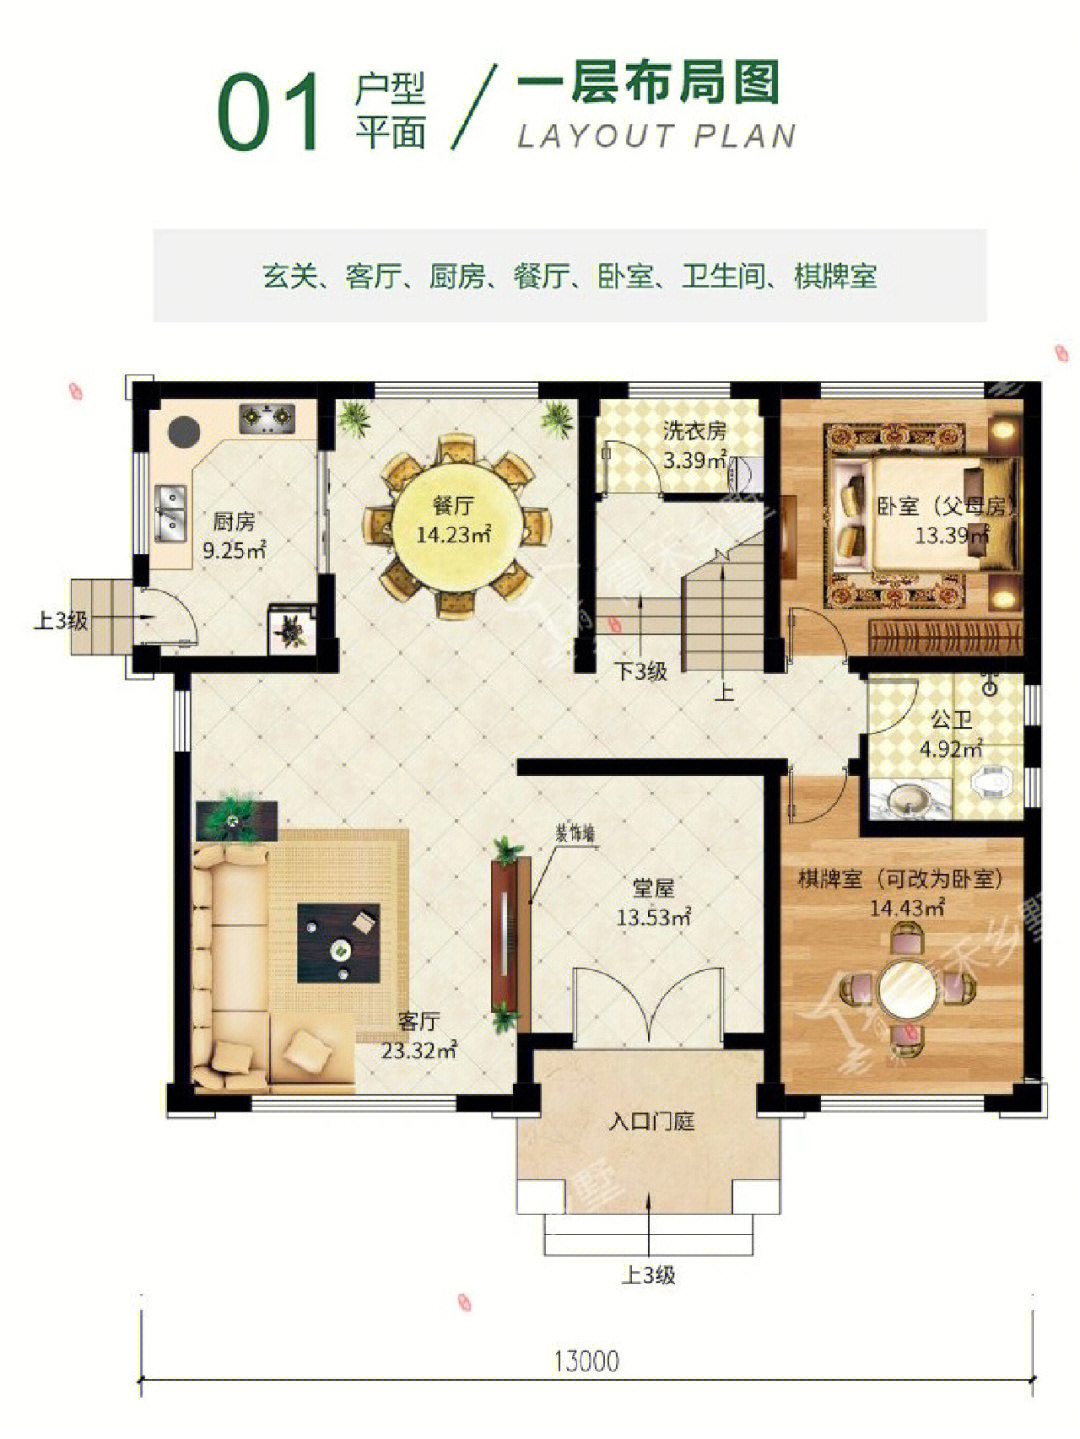 13x12米三层新中式别墅图纸推荐功能布局